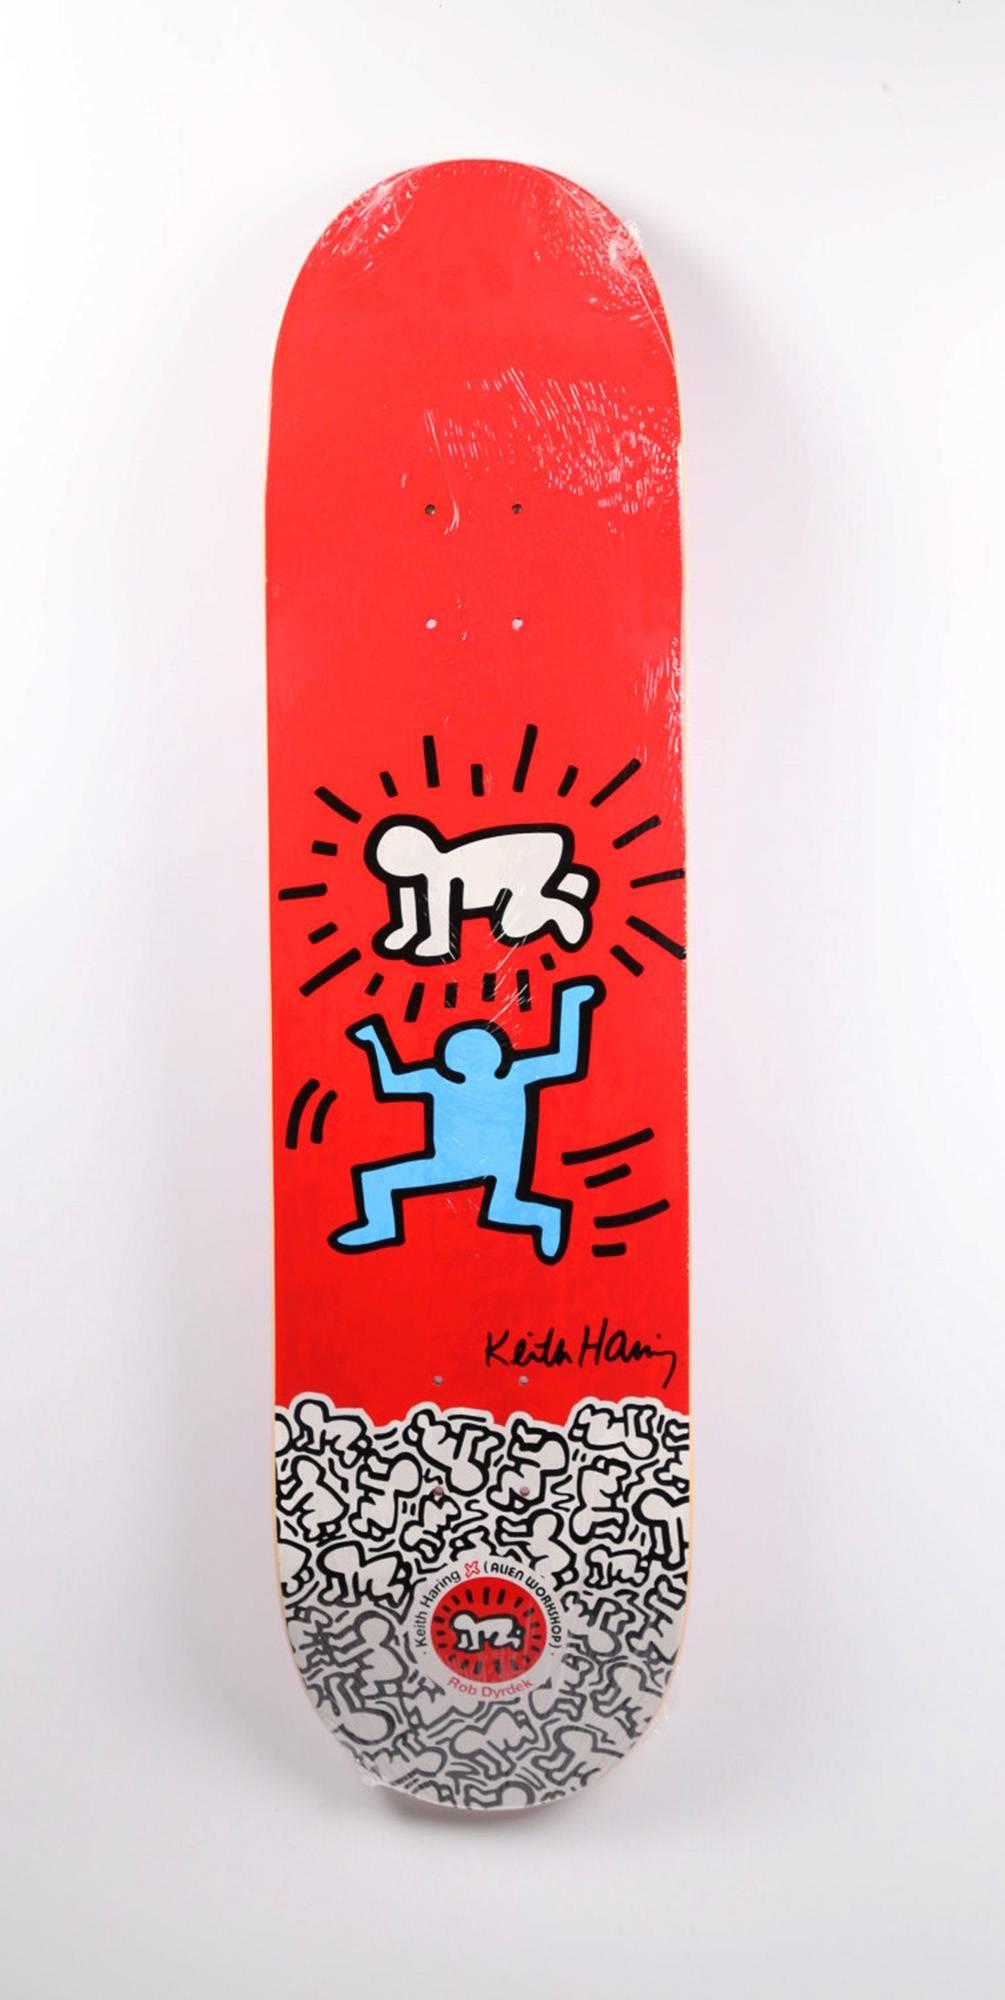 Keith Haring Skateboard Deck Set: 
Dieses hervorragend bedruckte, seltene und auffällige Set von 10 Keith-Haring-Skate-Decks entstand ca. 2012 als Ergebnis der Collaboration zwischen Alien Workshop und der Keith Haring Foundation. 

Mit einigen der